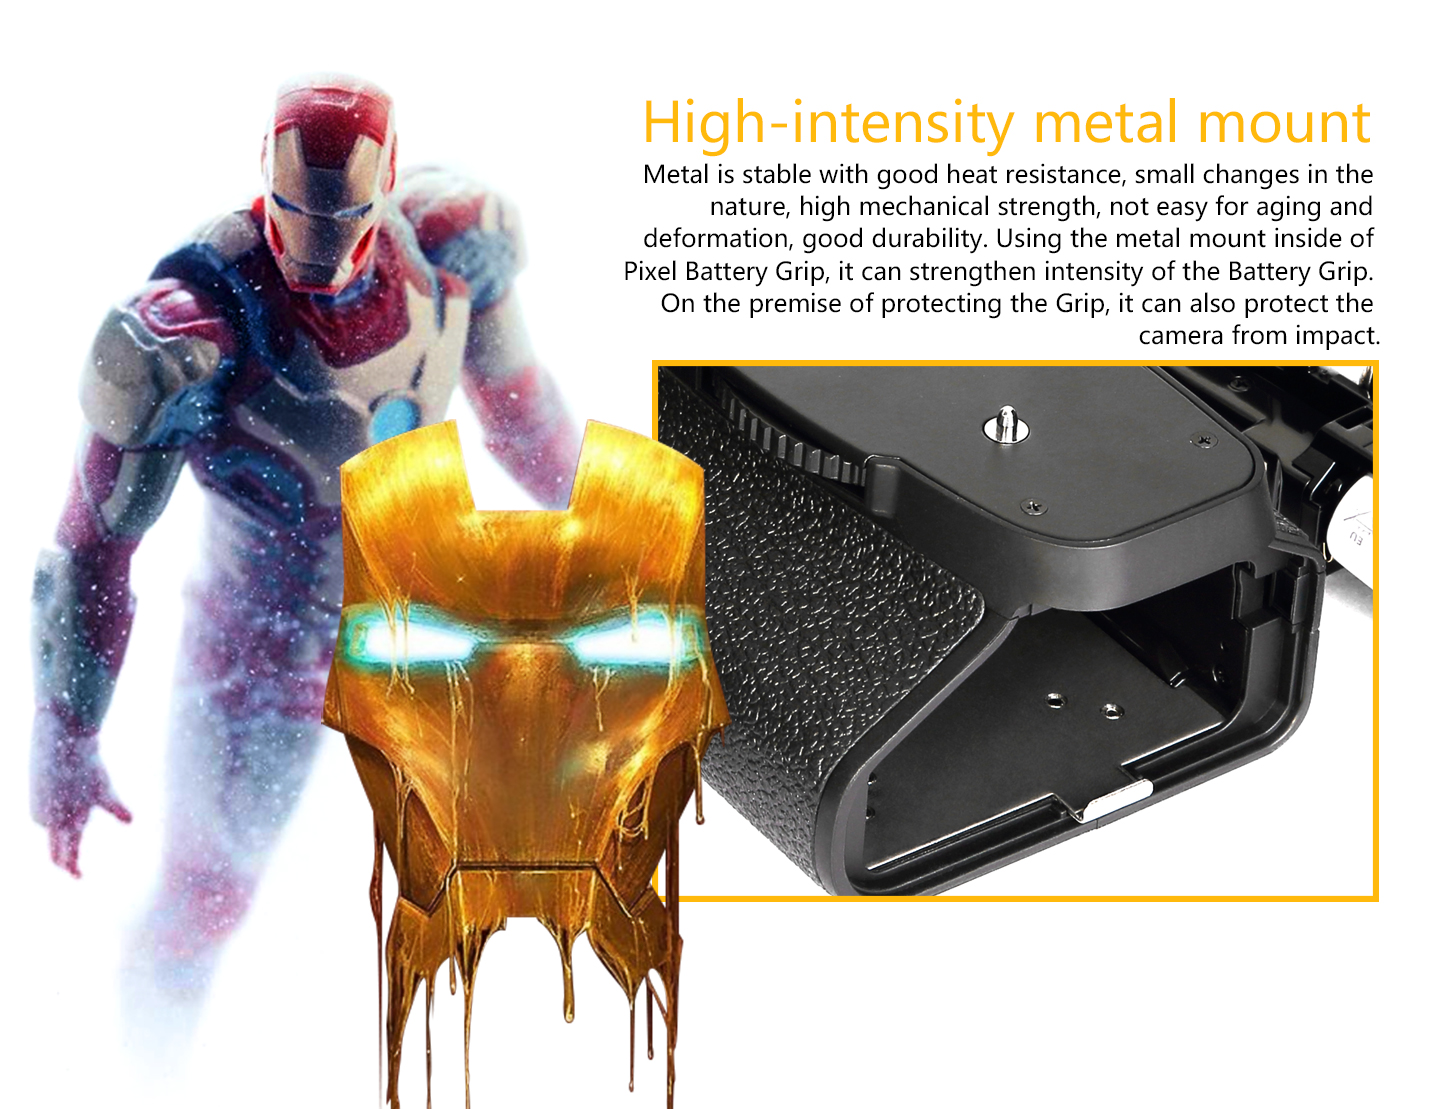 High-intensity metal mount